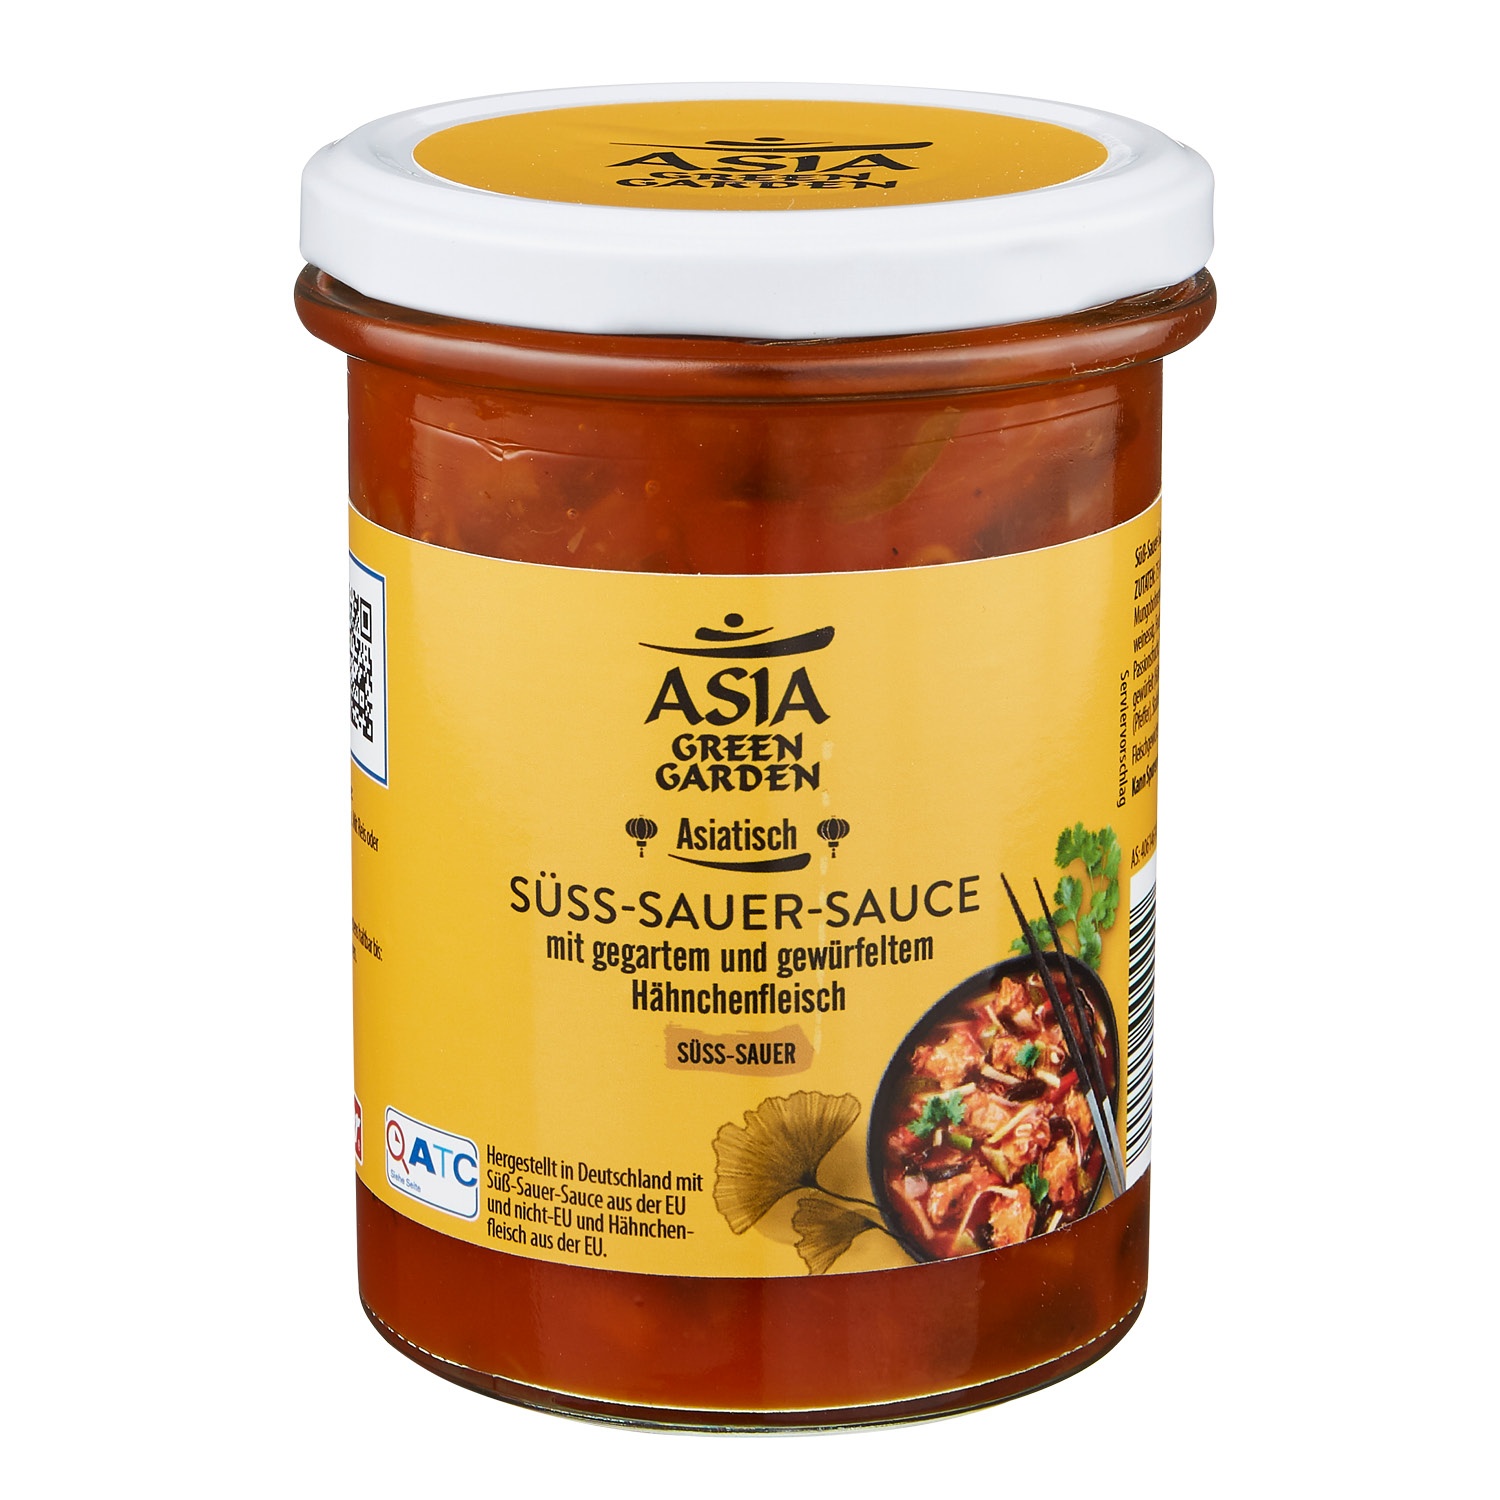 ASIA GREEN GARDEN Sauce asiatischer Art mit Hähnchenfleisch 400 g